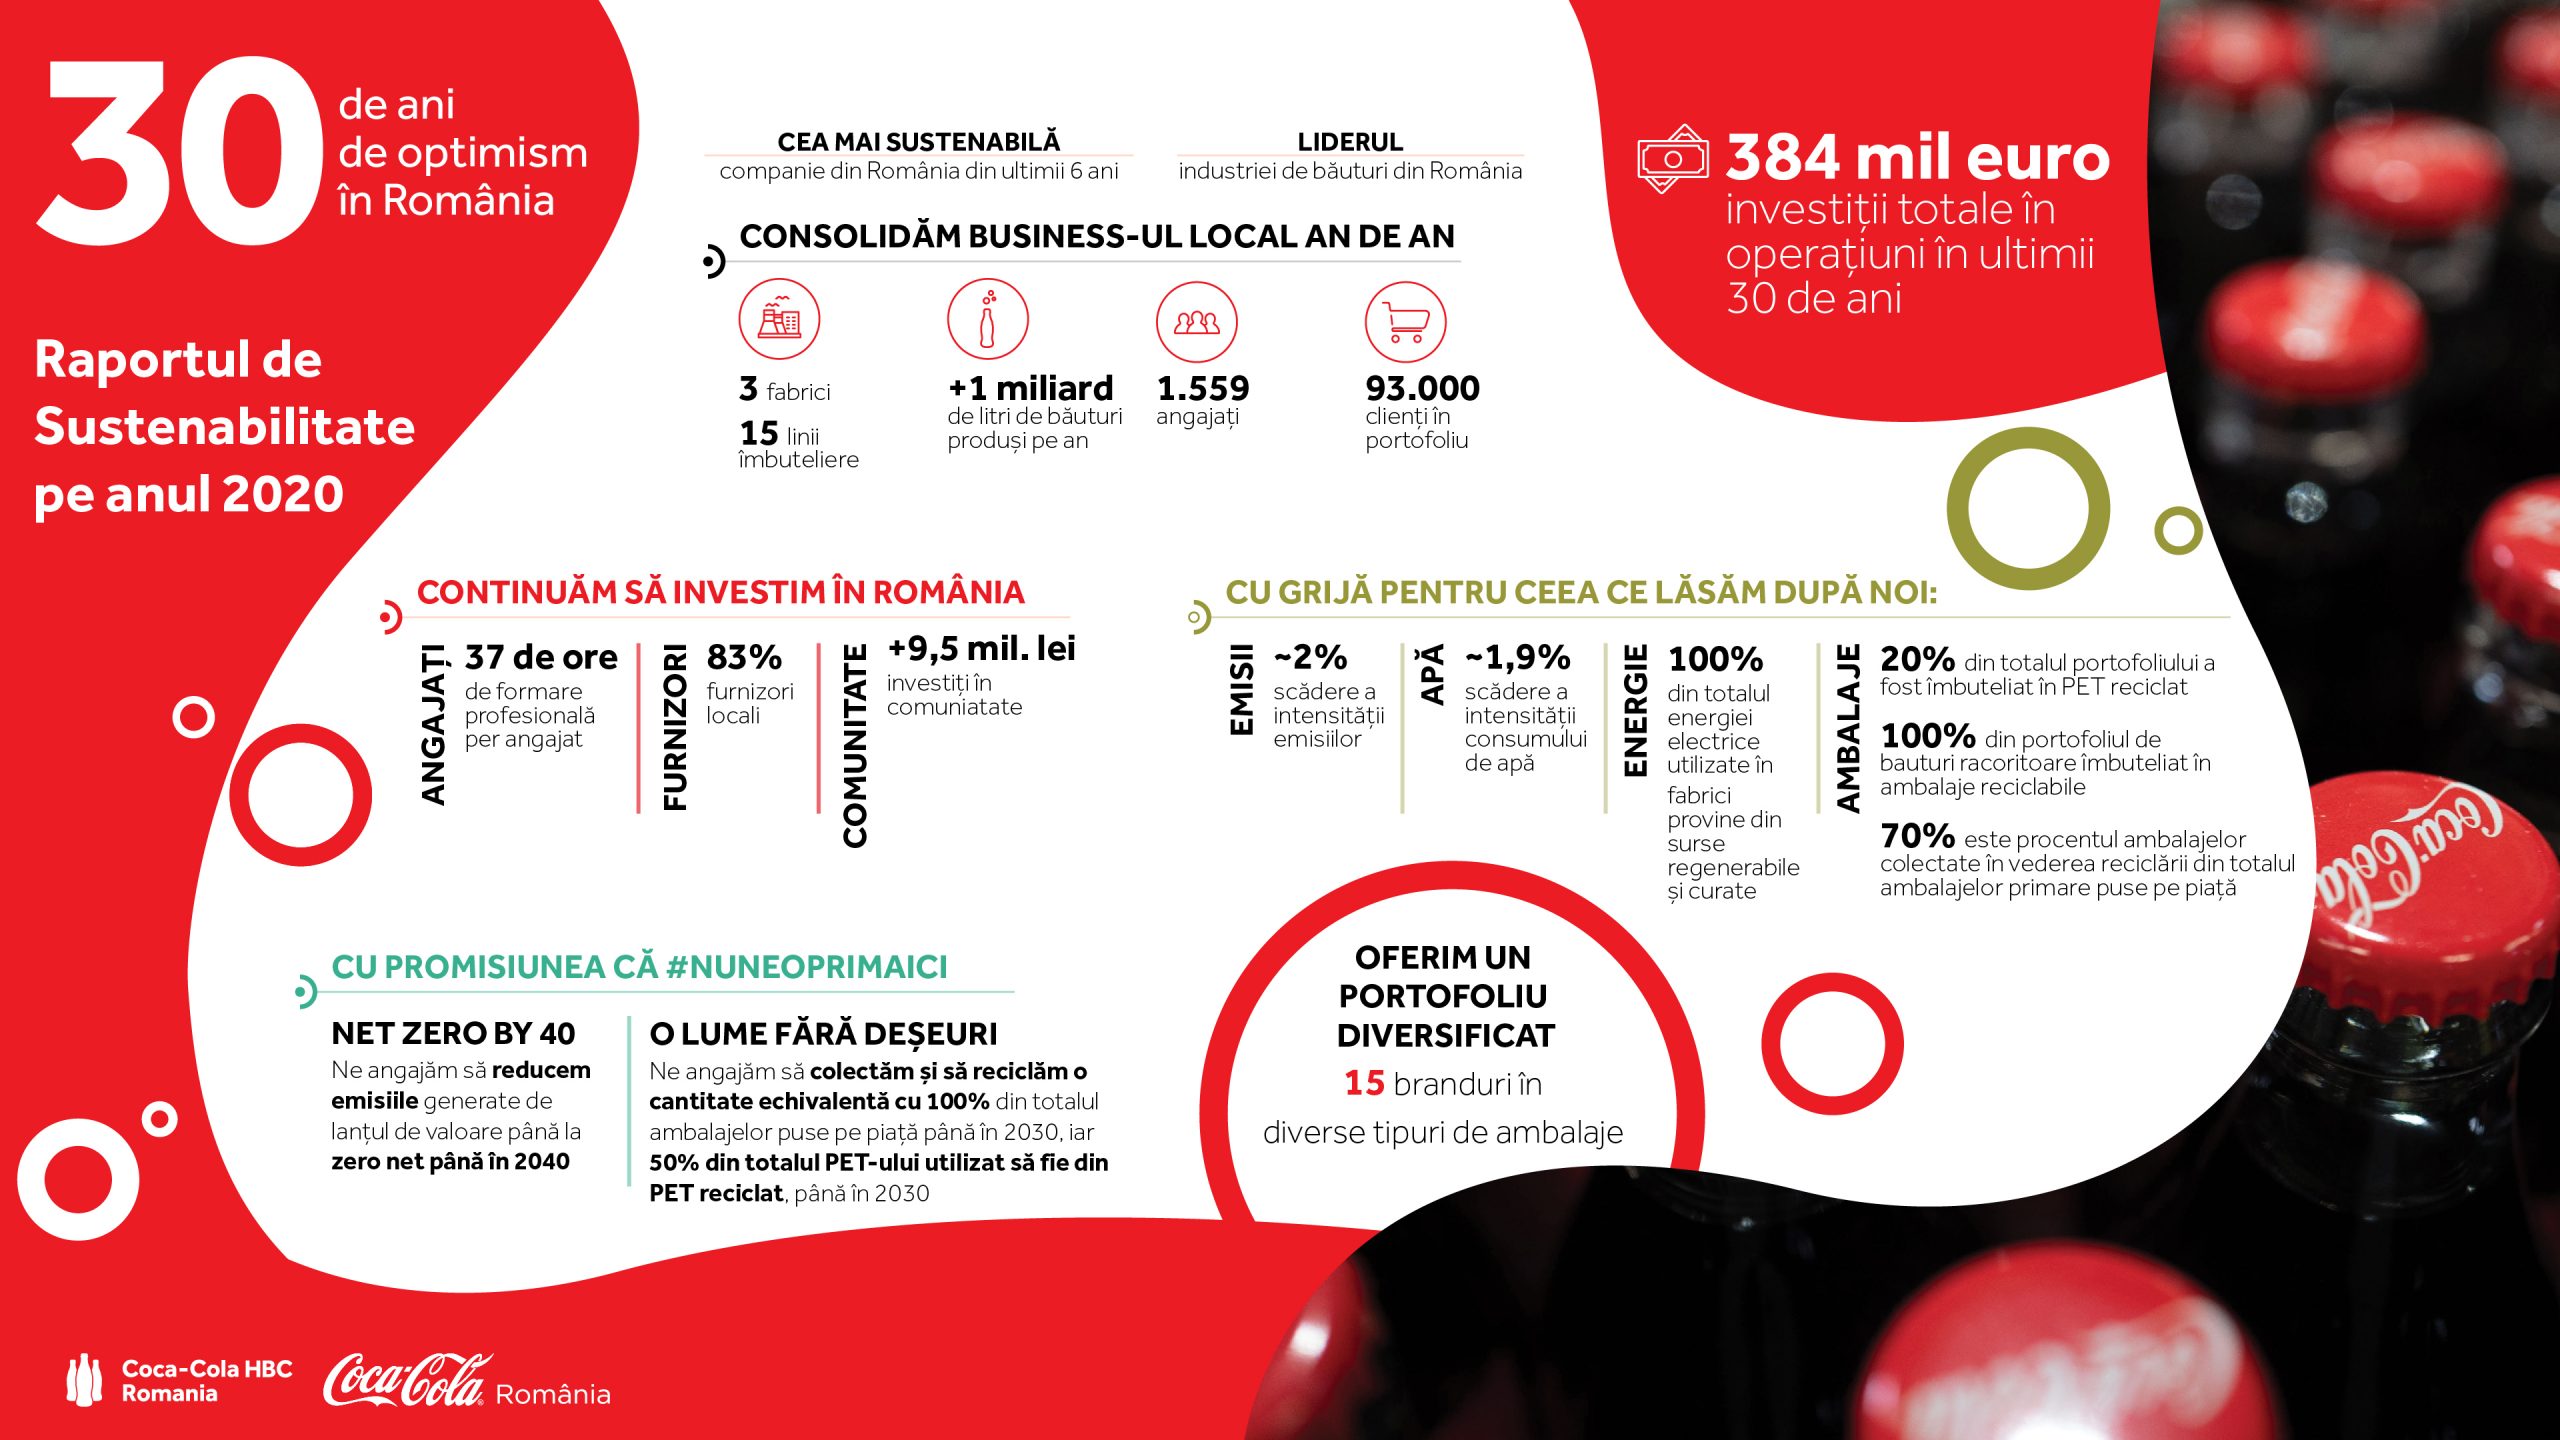 Sistemul Coca-Cola în România lansează un nou Raport de Sustenabilitate și continuă să își ia angajamente pe termen lung